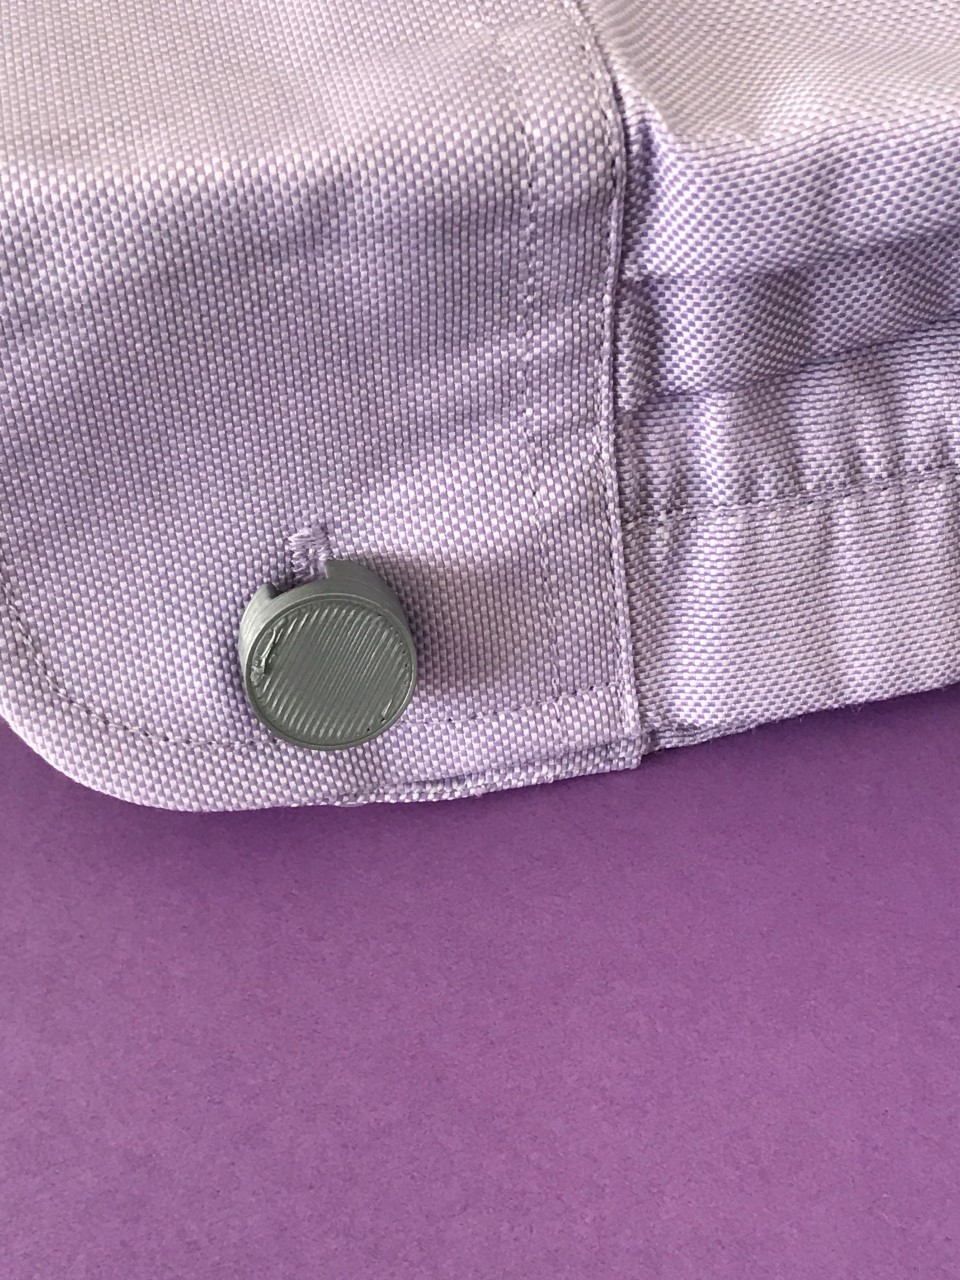 Cufflink button with novel hinge - convert buttons to cufflinks (Boutons de manchette)